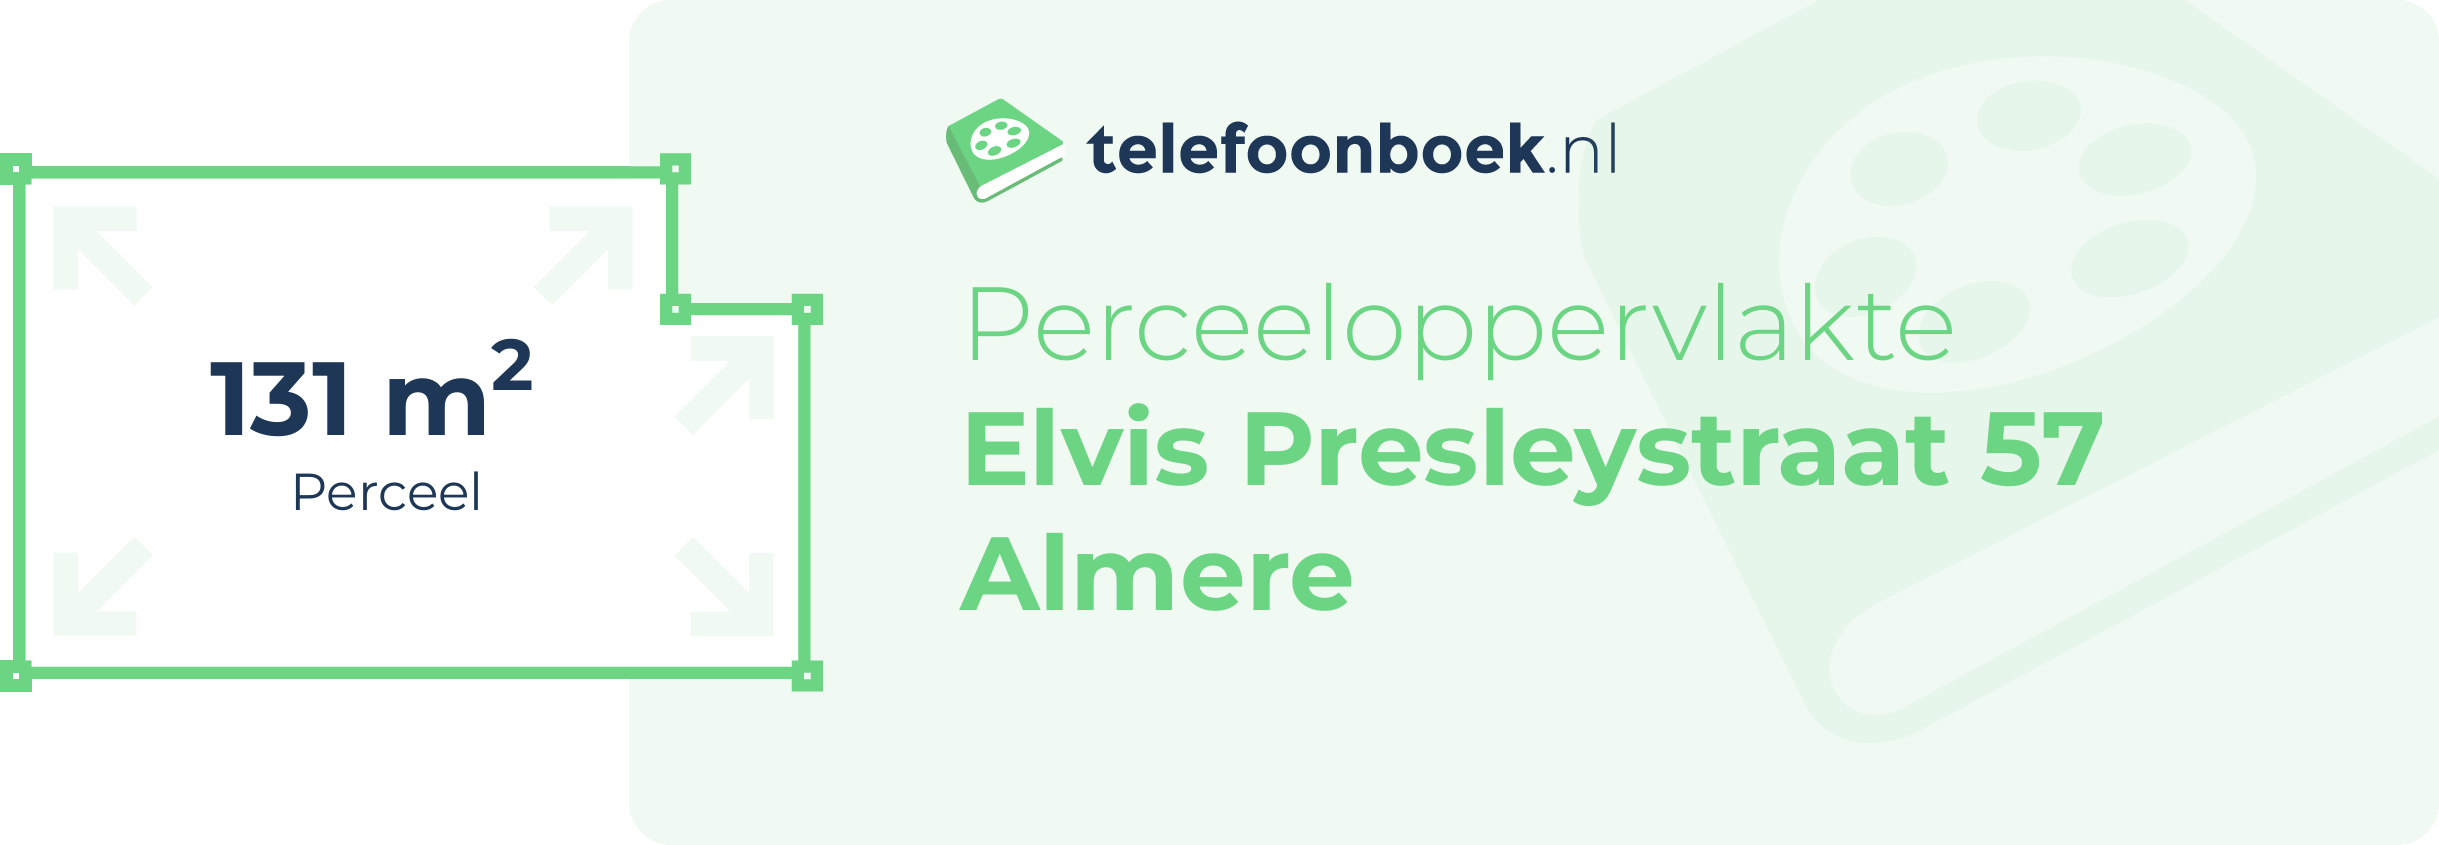 Perceeloppervlakte Elvis Presleystraat 57 Almere